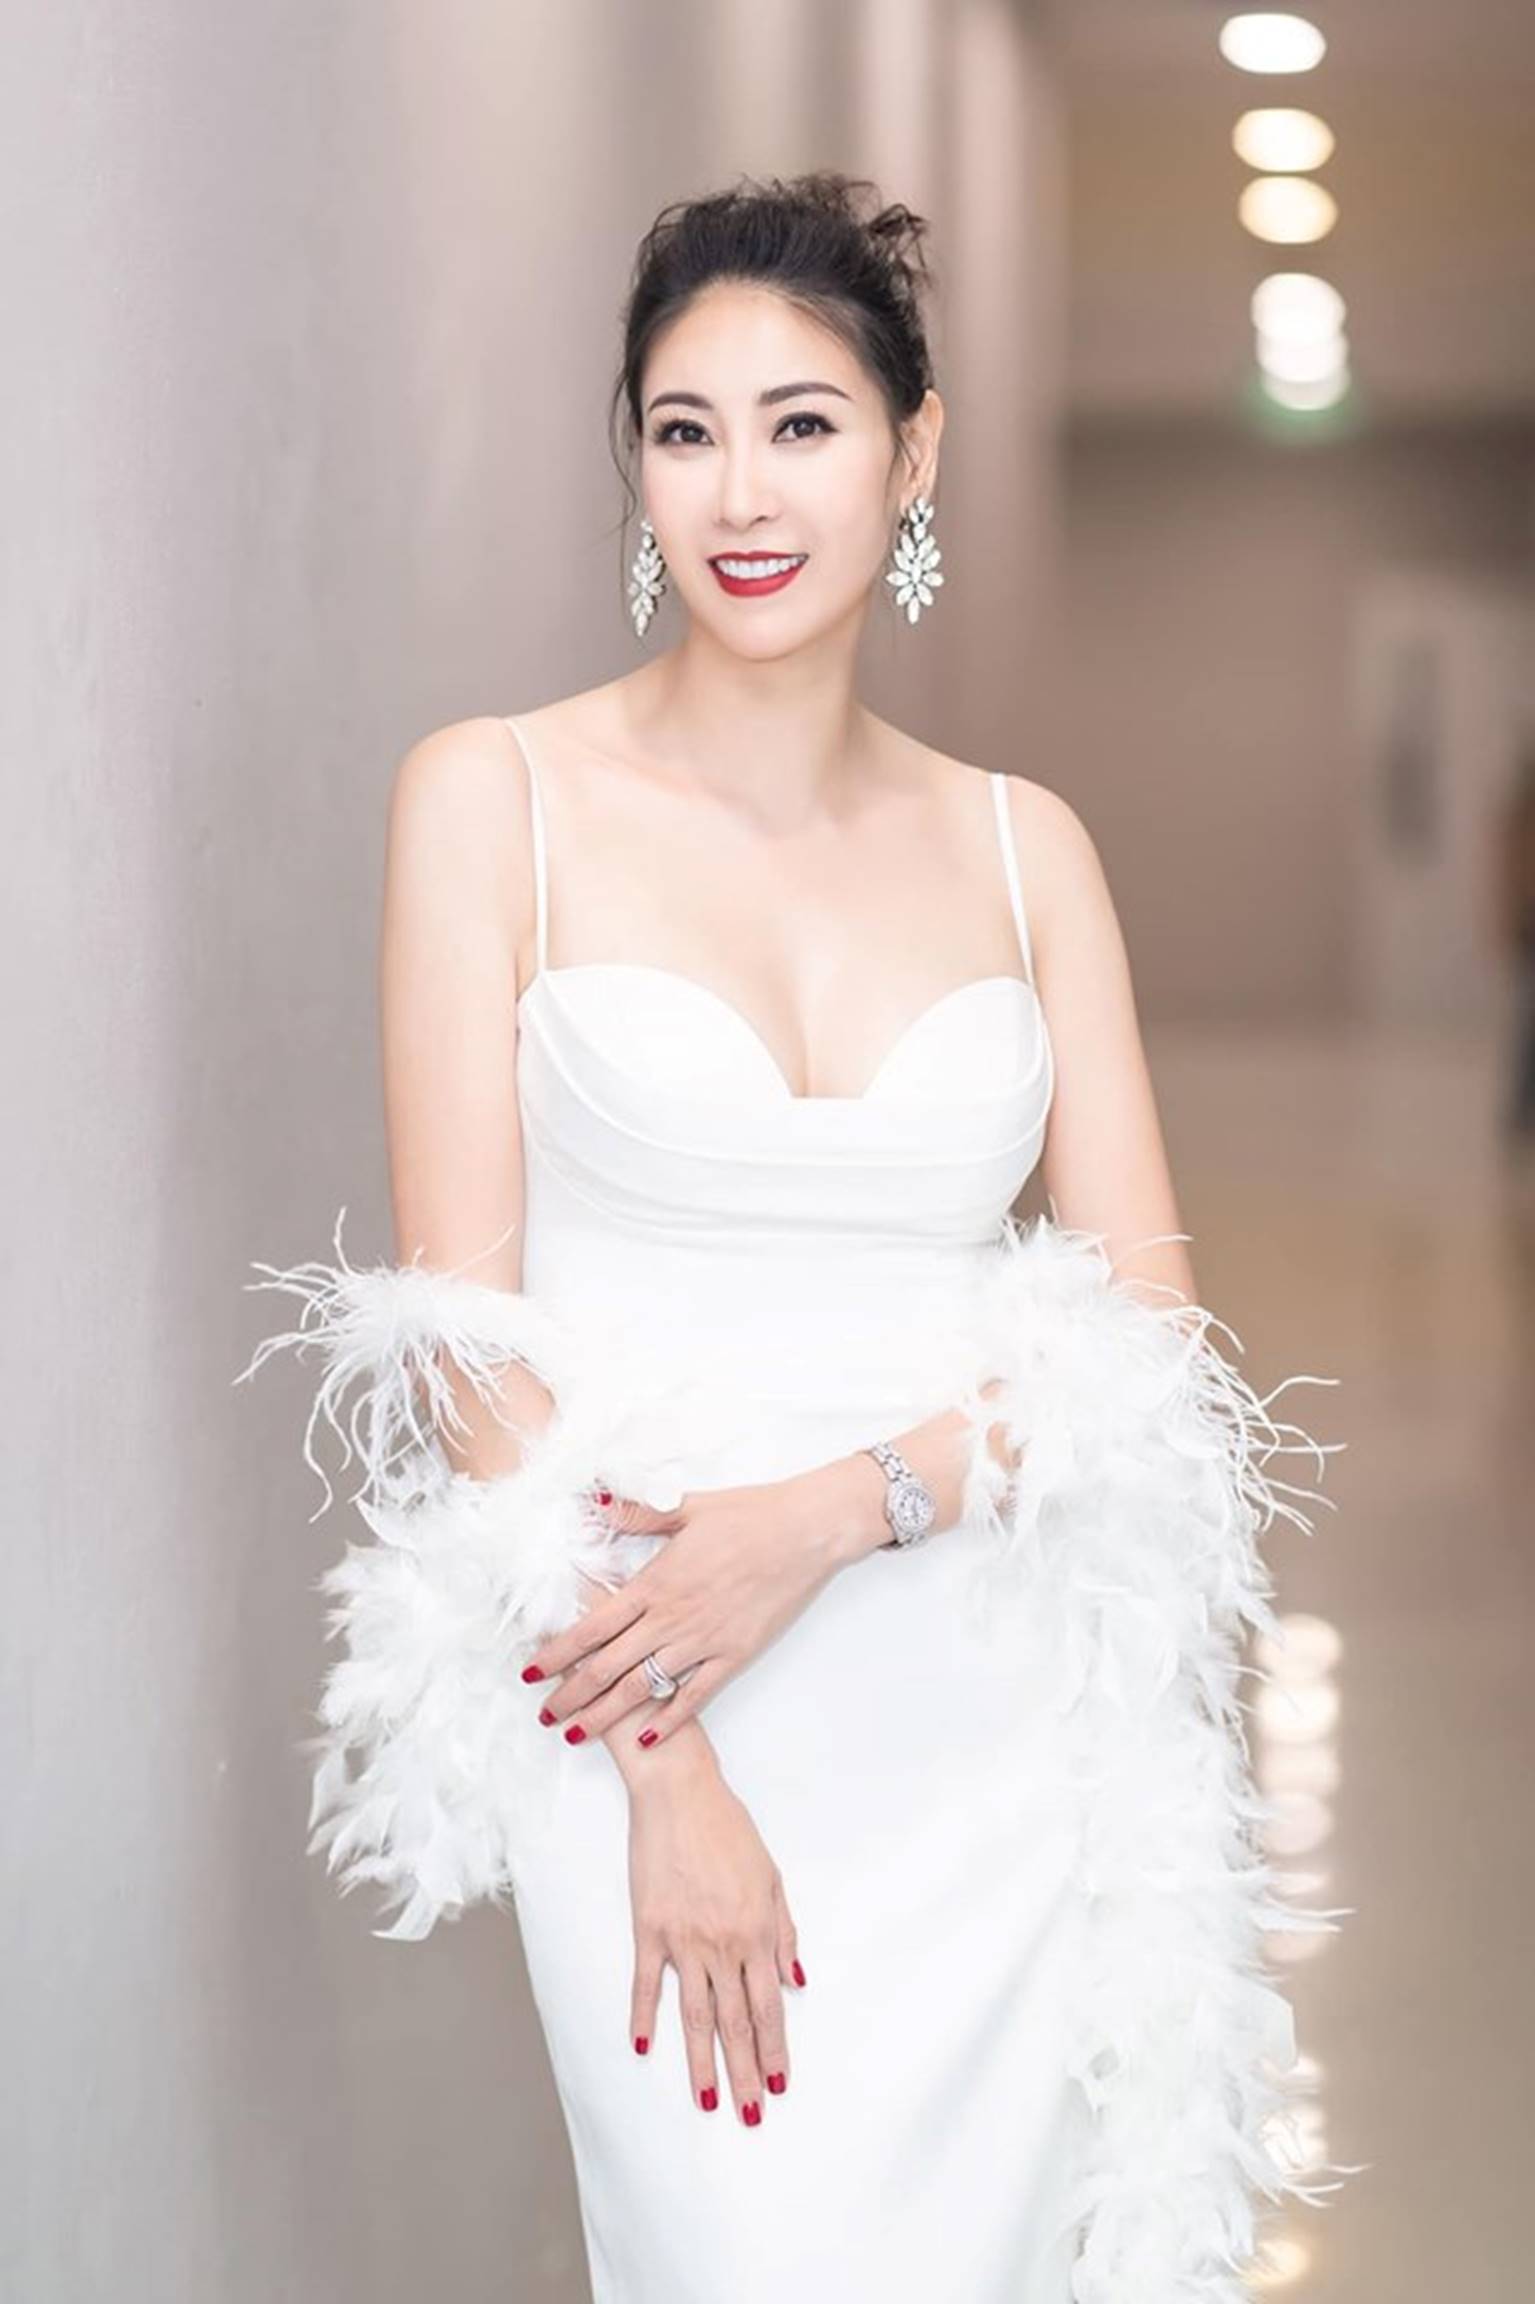 Hoa hậu Hà Kiều Anh mặc váy đẹp như thiên nga, cả showbiz ngước nhìn-1